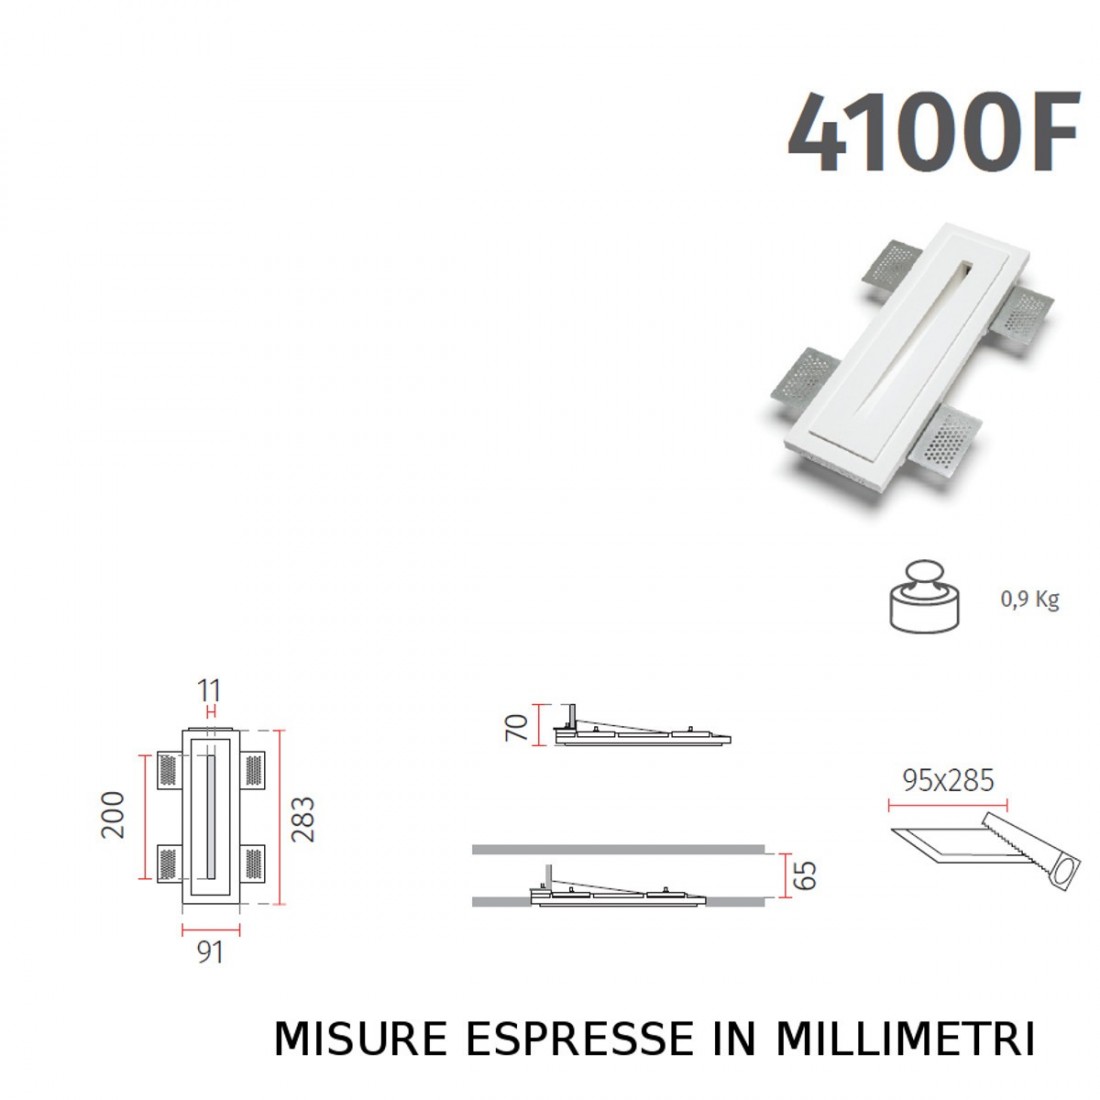 Faretto incasso BF-4100F LED 2W 200LM WIRELESS gesso verniciabile verticale segnapasso cartongesso muro interno IP20